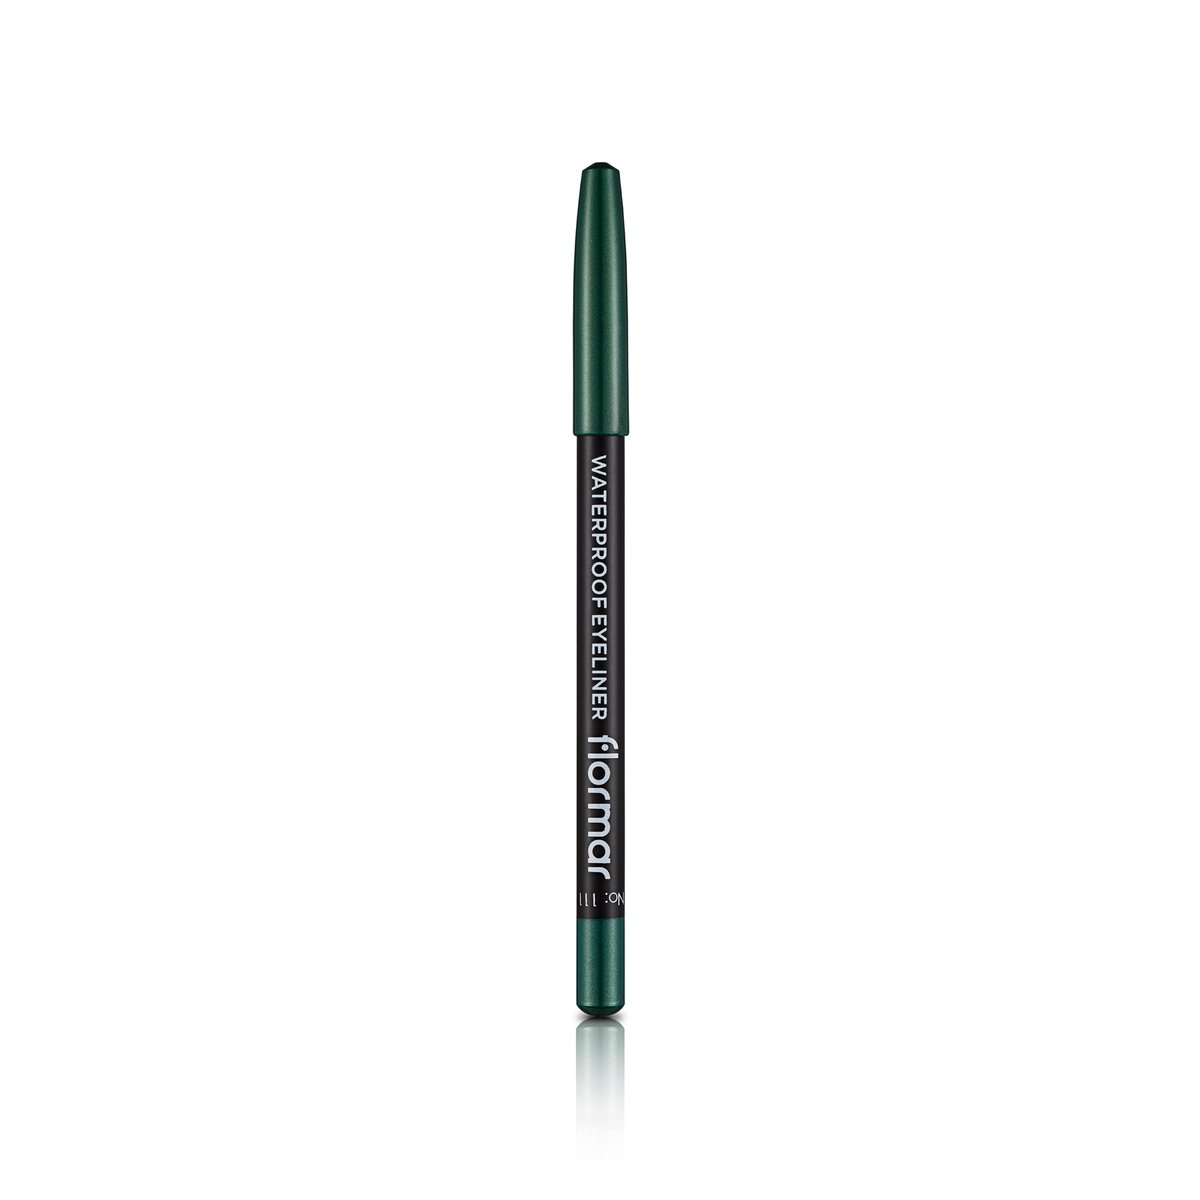 Flormar Waterproof Eyeliner Pencil - 111 Intensive Jade 1pc